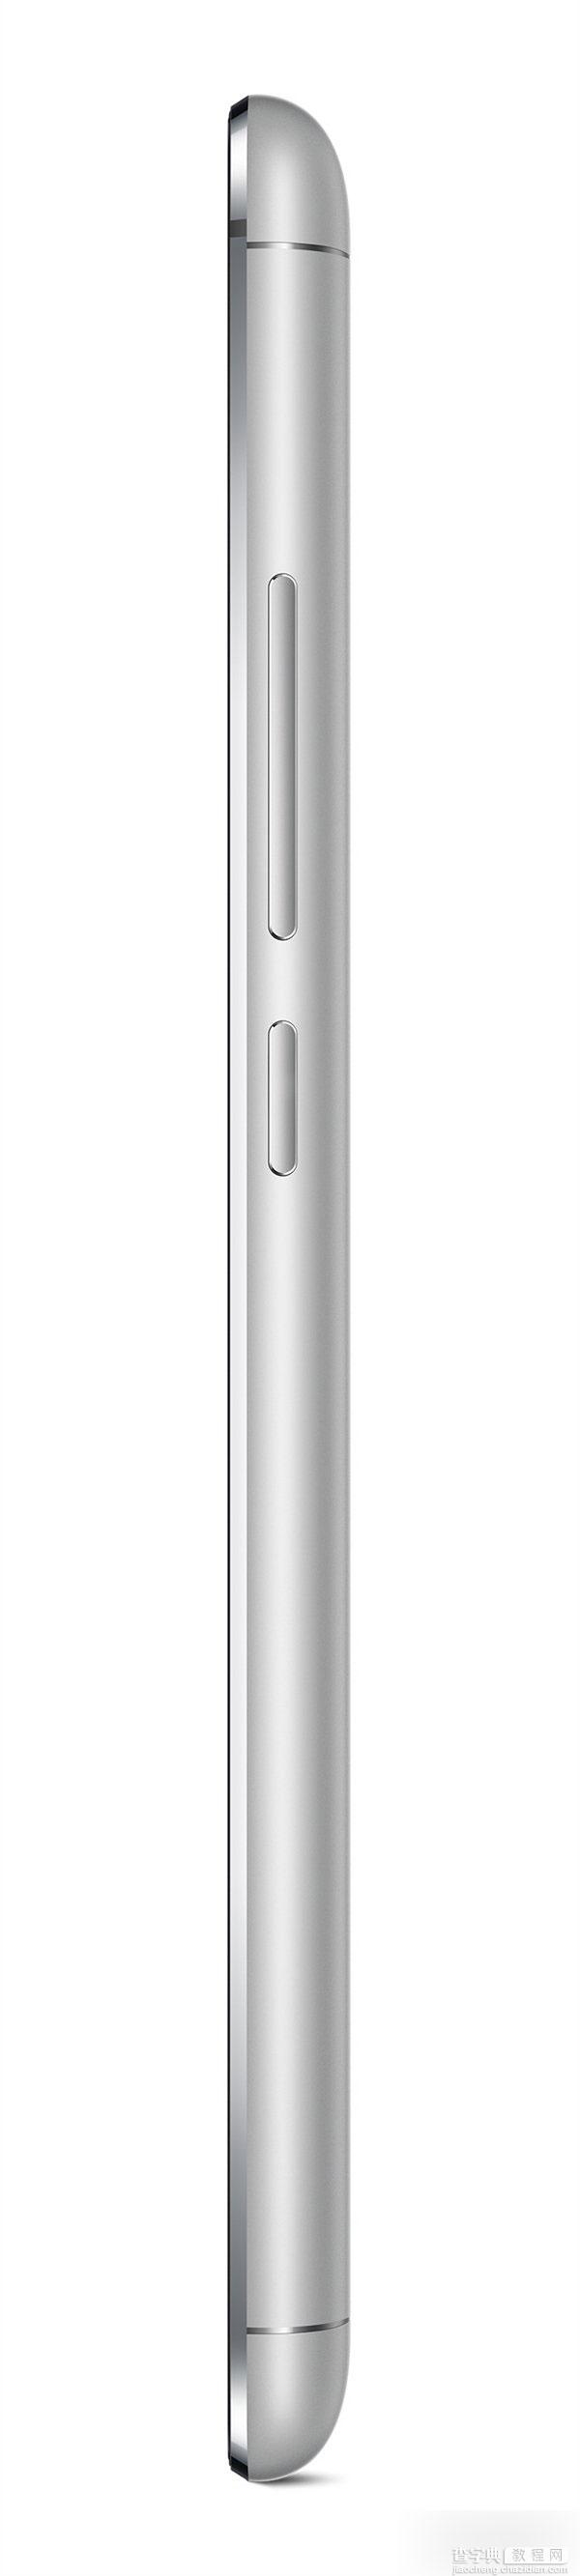 魅族MX5手机的官方高清图赏 全金属机身50